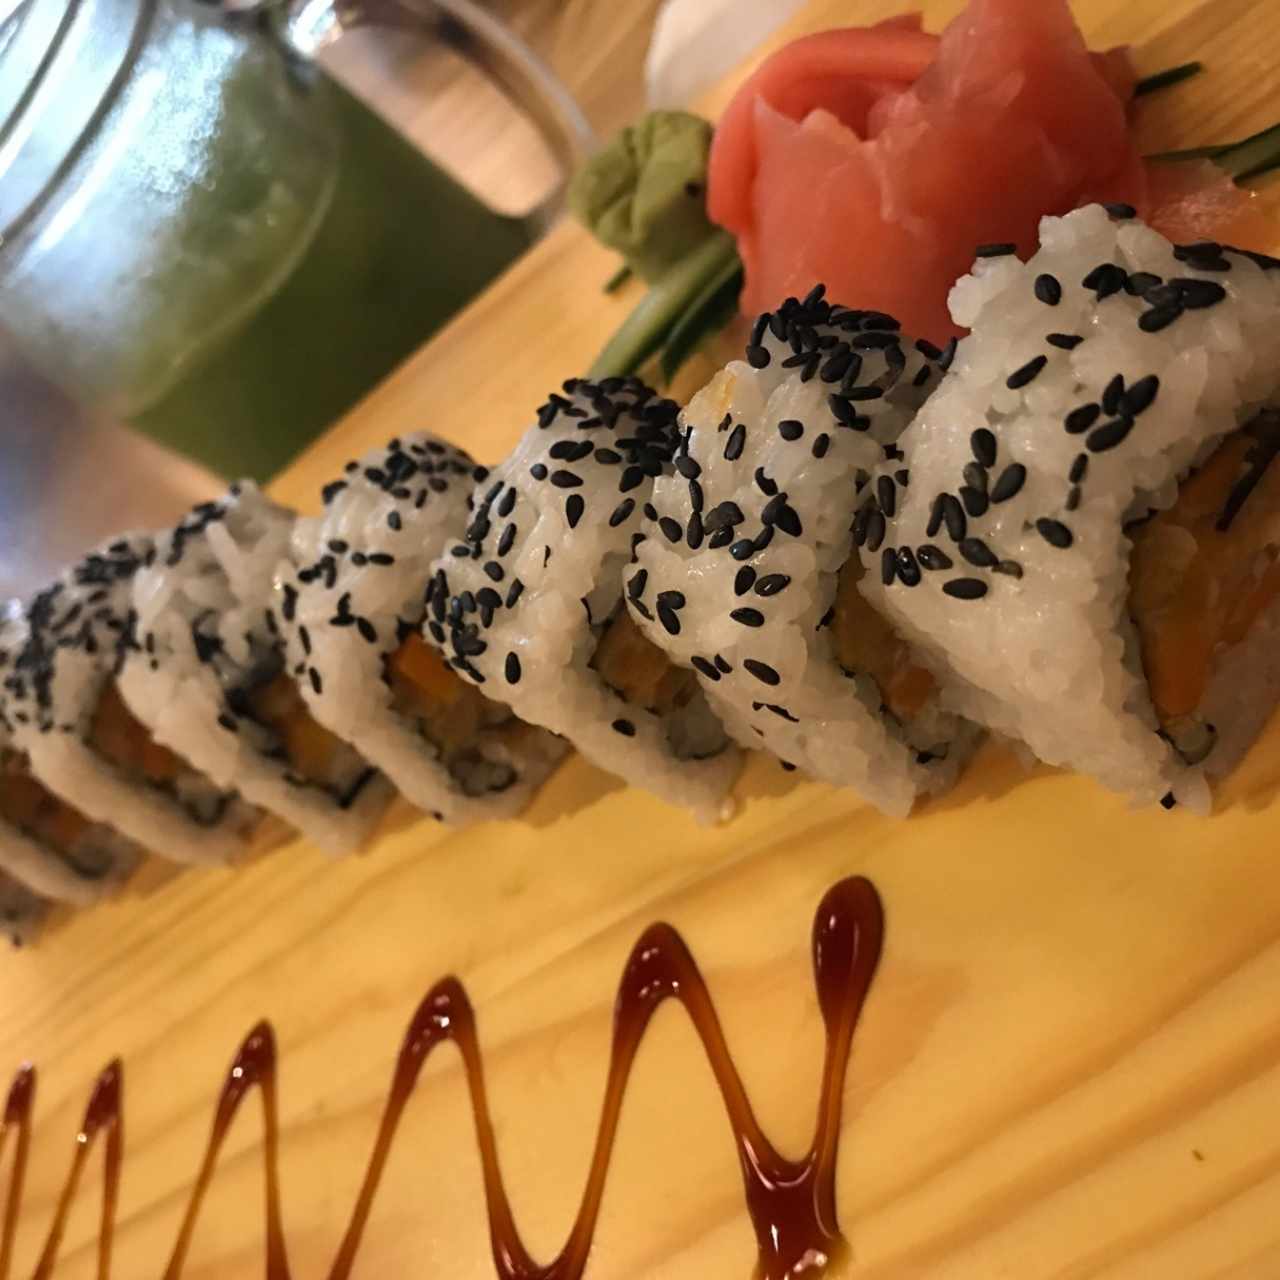 Sushi Vegetariano